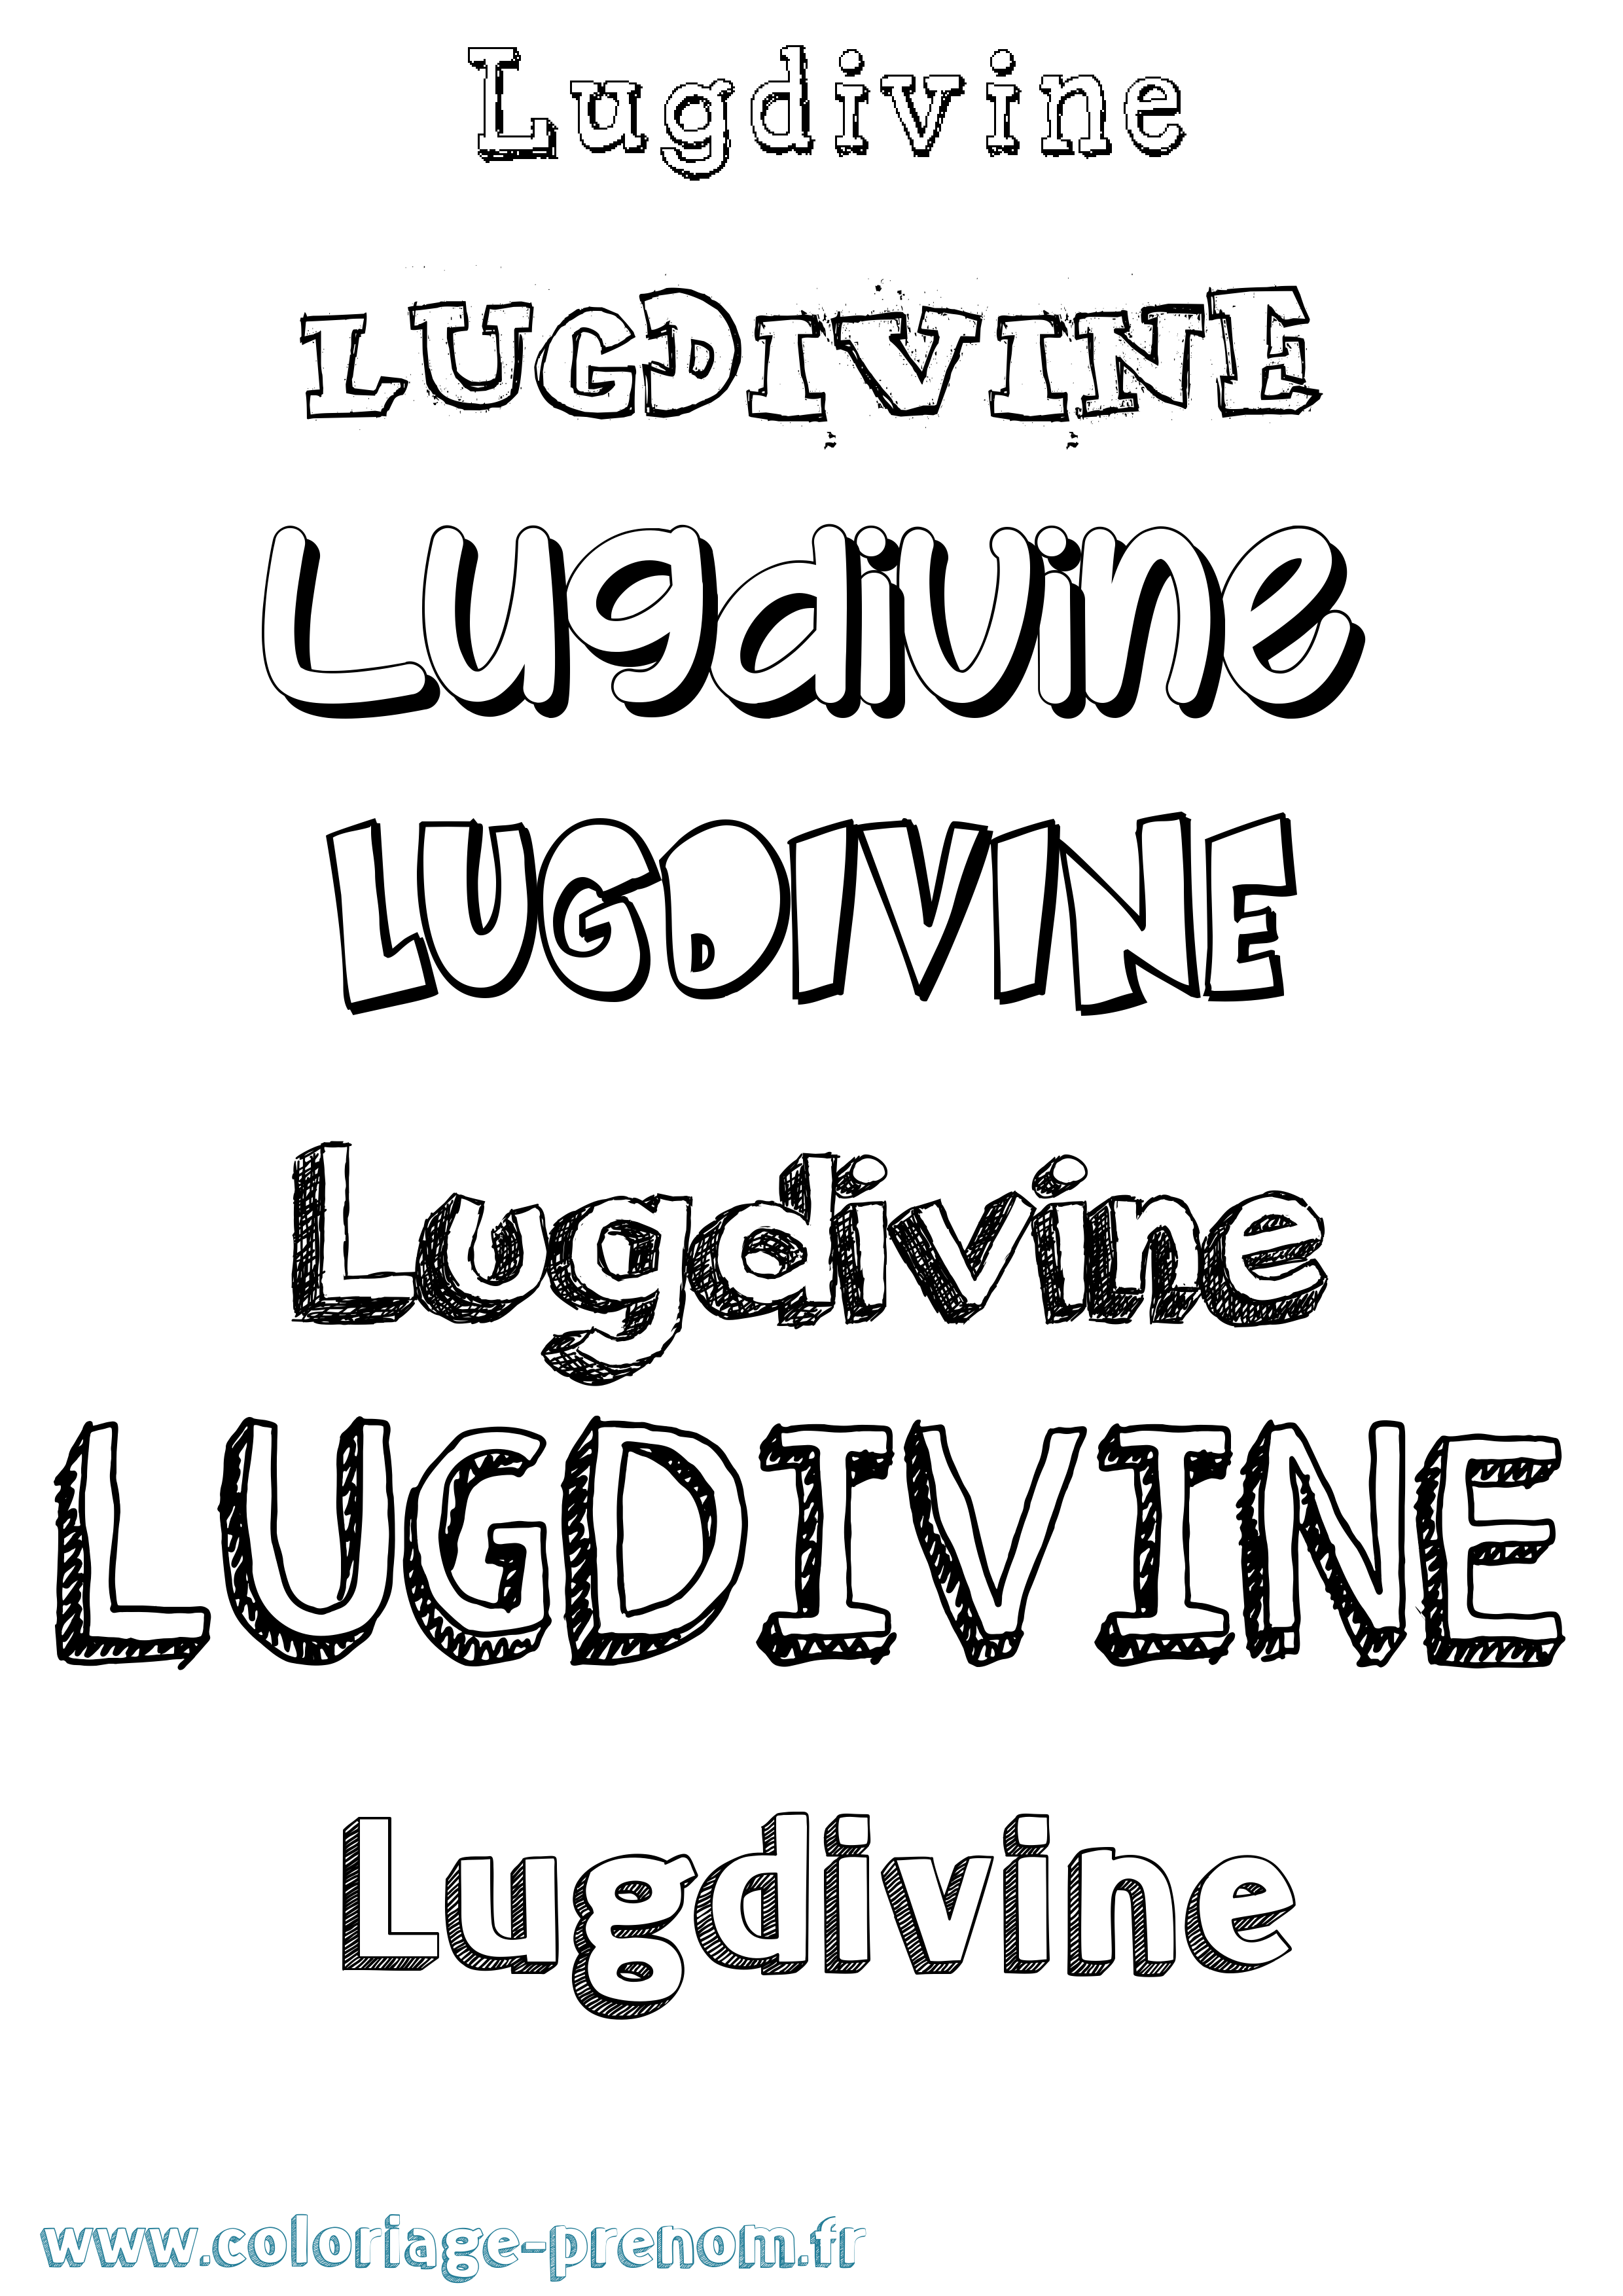 Coloriage prénom Lugdivine Dessiné